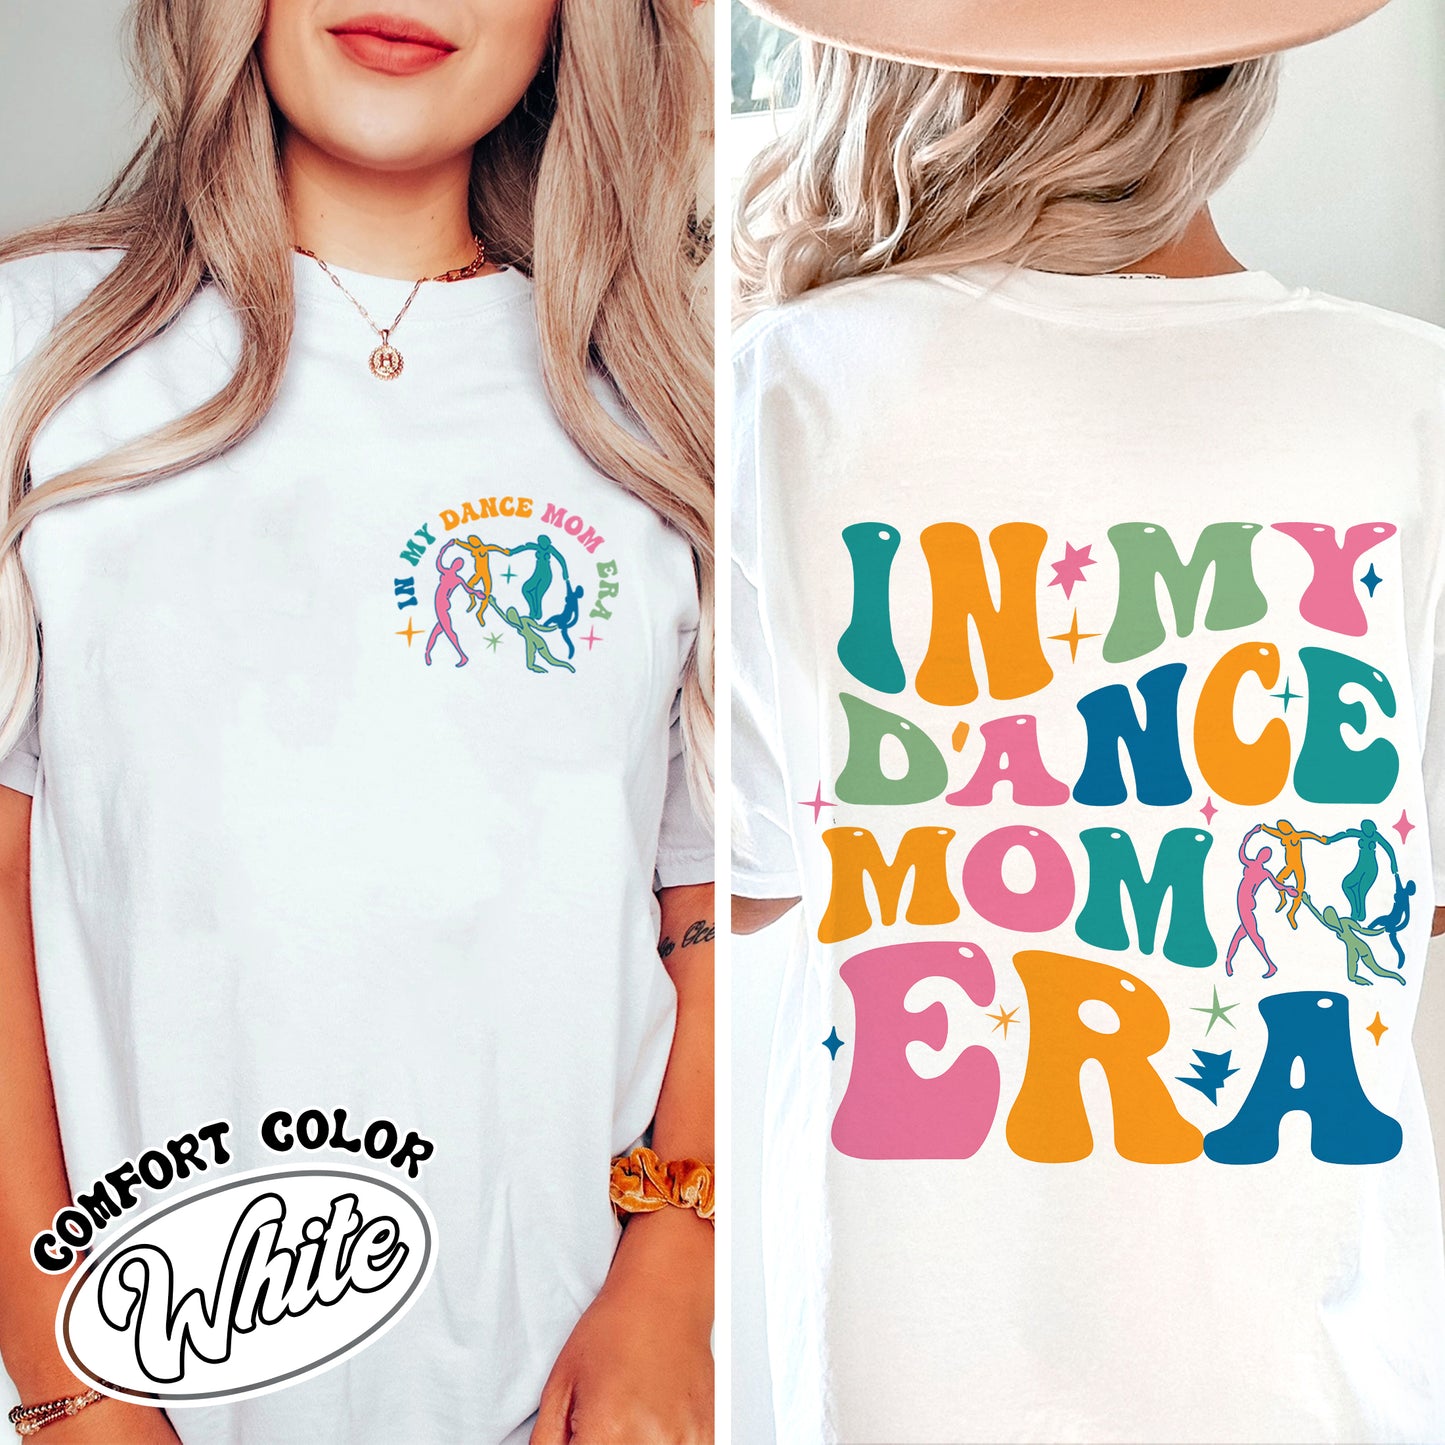 In My Dance Mom Era Comfort Color Shirt, In My Dance Mom Era, In My Dance Mom Era Shirt, Dance Mama Shirt, Dancer Shirt For Mom, Dance Mom Era